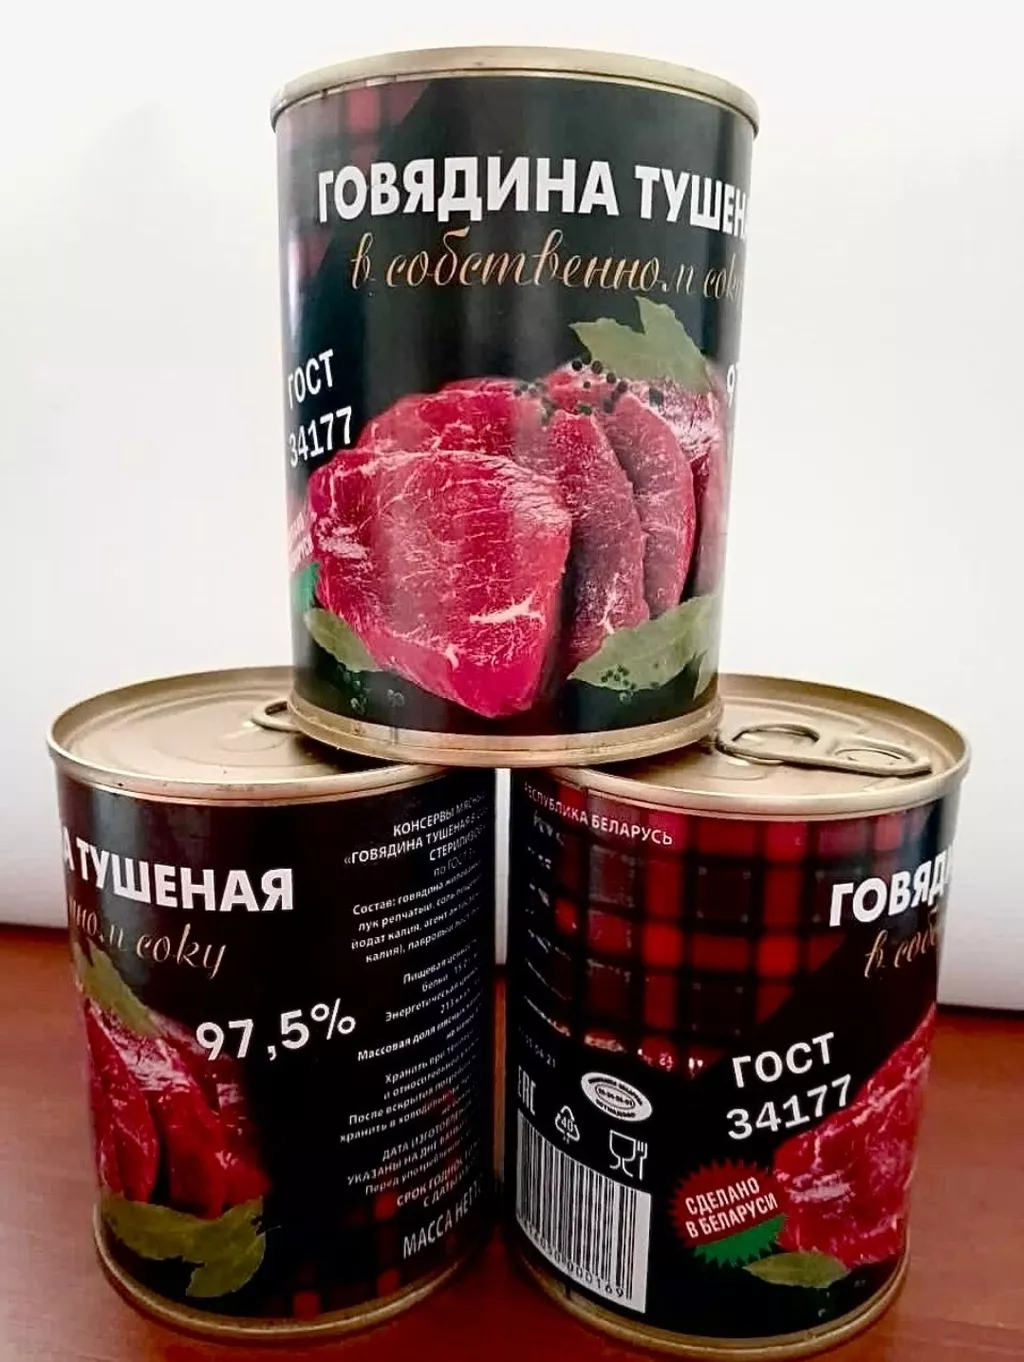 Фотография продукта Тушеная говядина гост, белорусь.